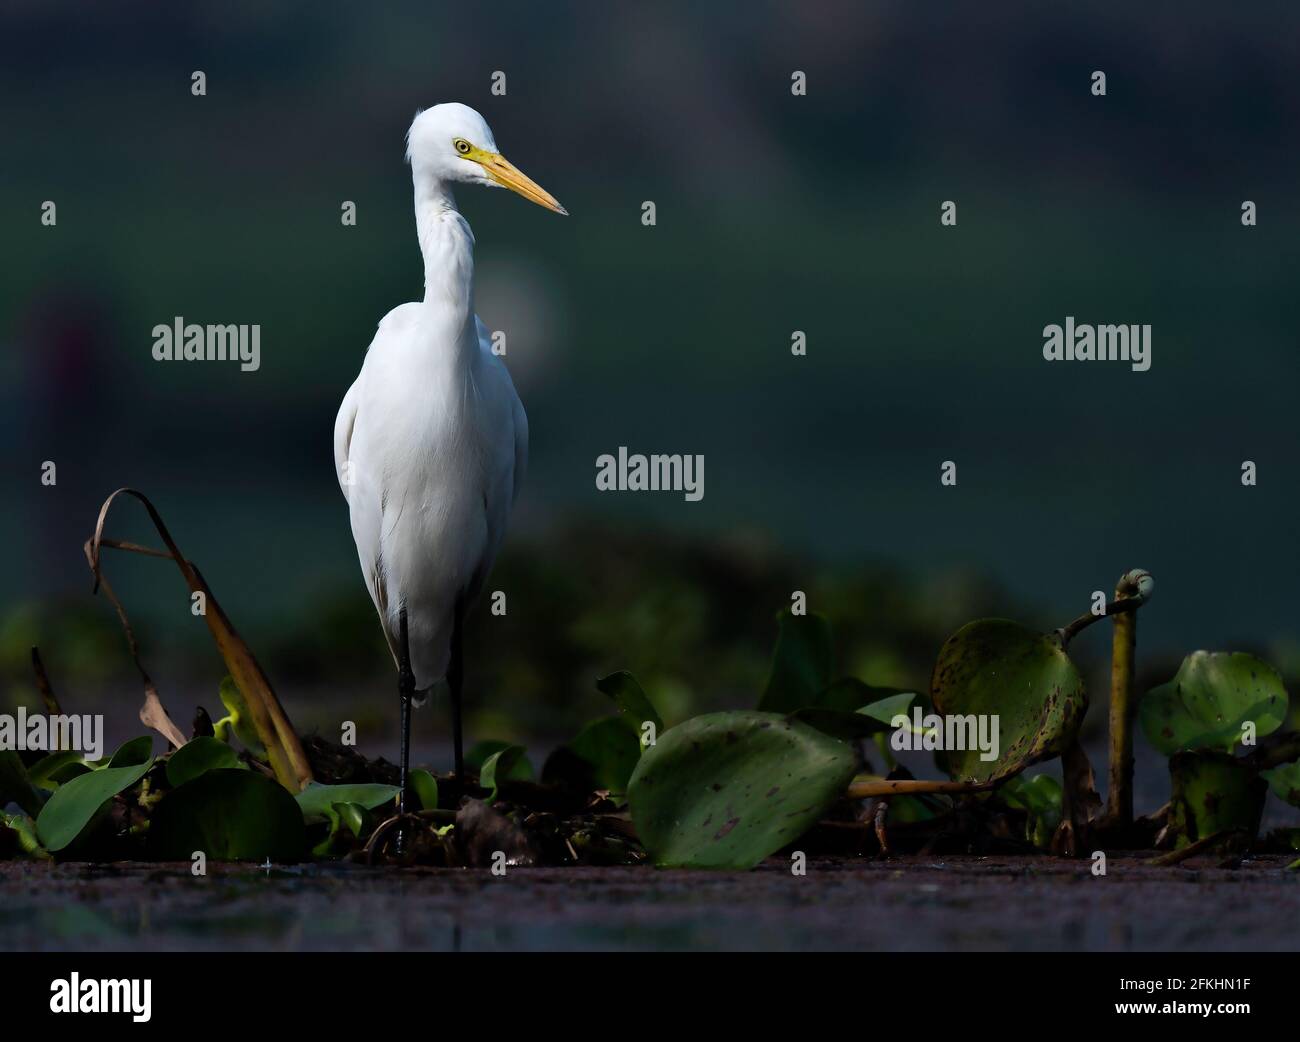 Egret in sfondo scuro. Fotografia di buona qualità per carta da parati o riviste da tavolo. Foto Stock